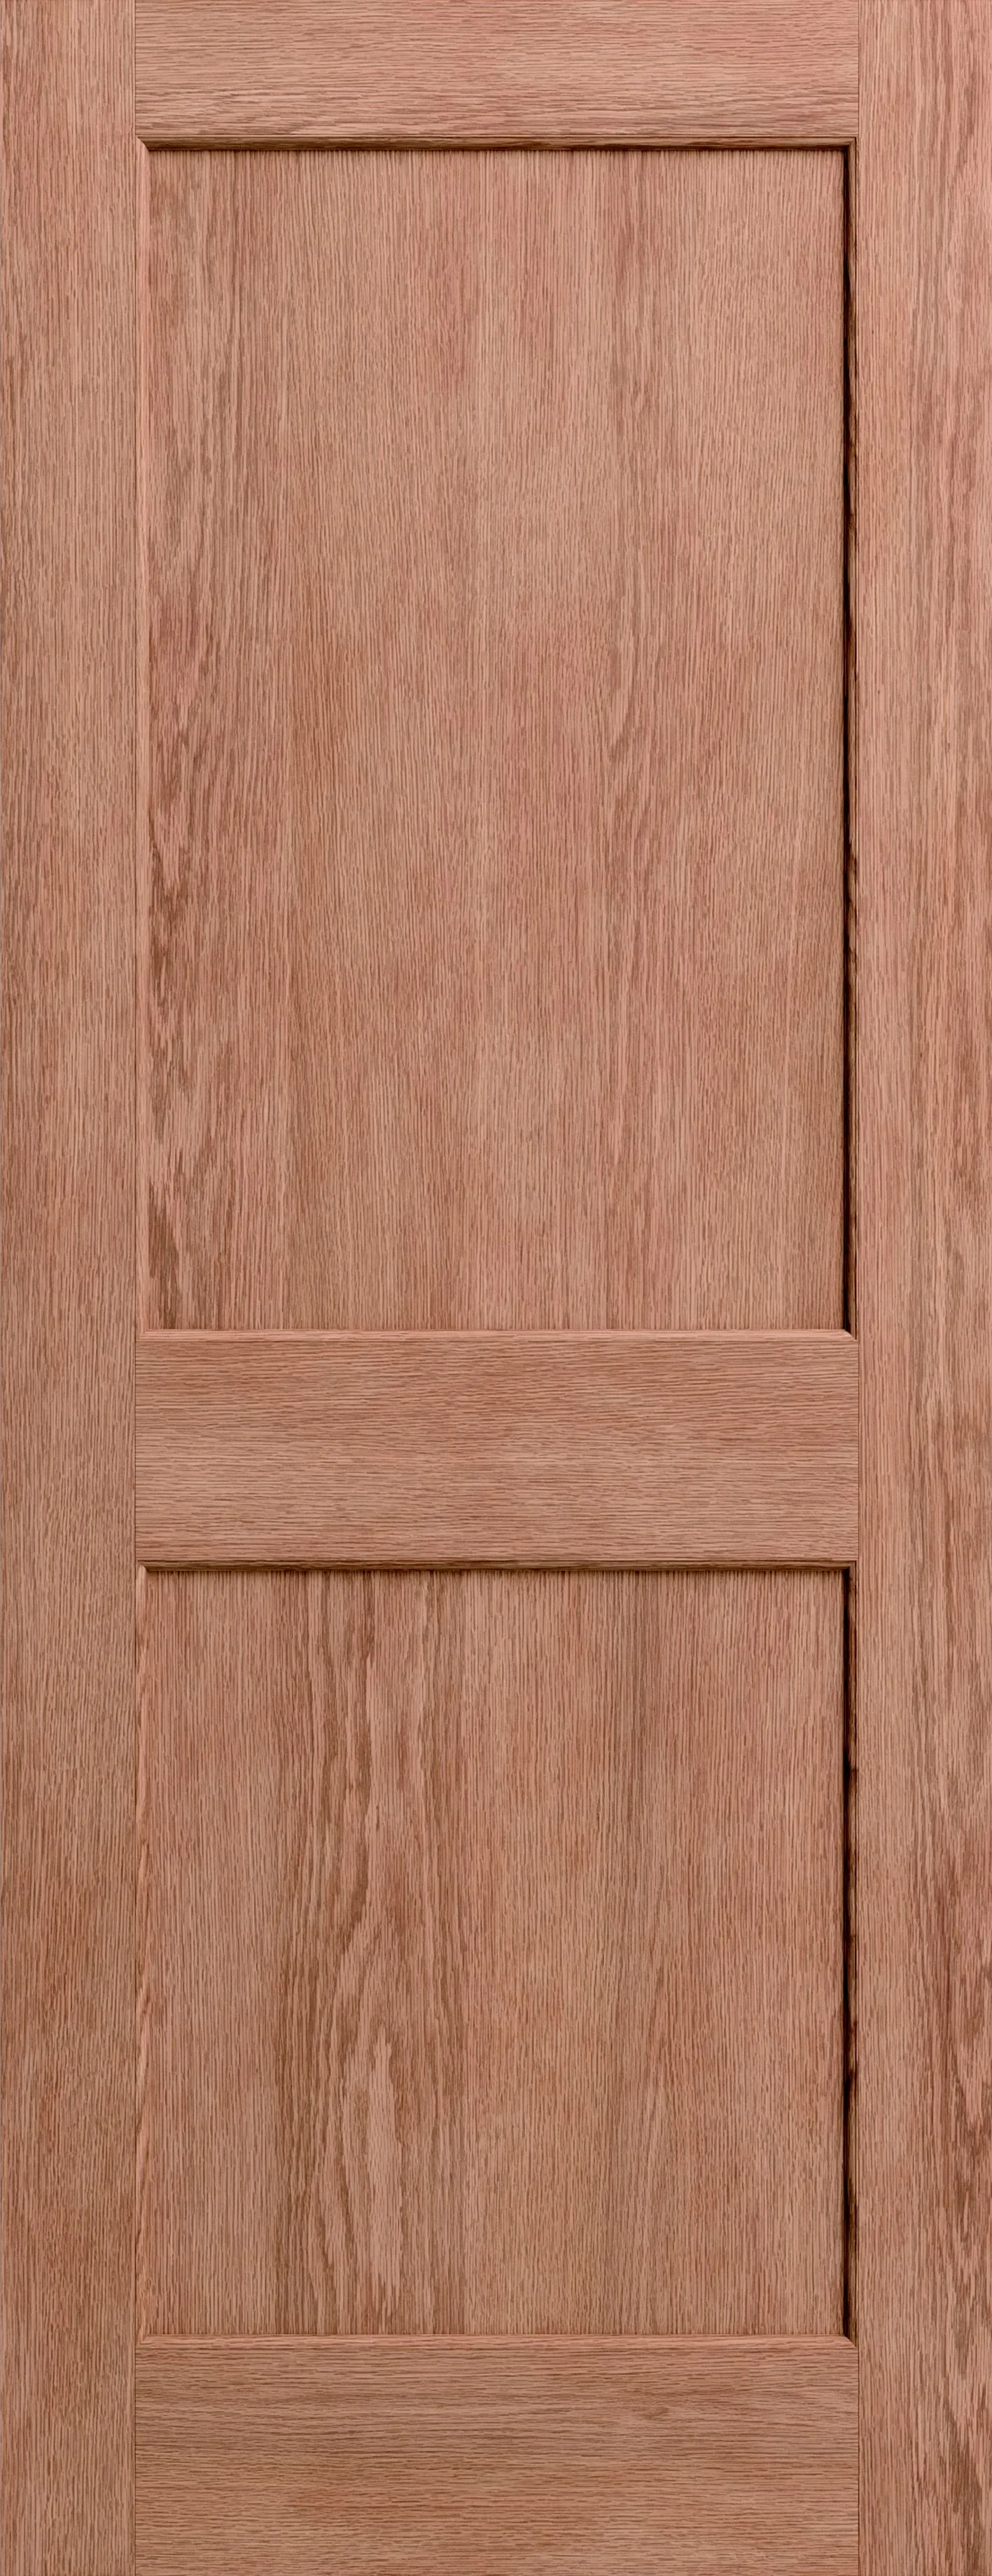 2 panel Oak veneer Internal Door, (H)1980mm (W)610mm (T)40mm